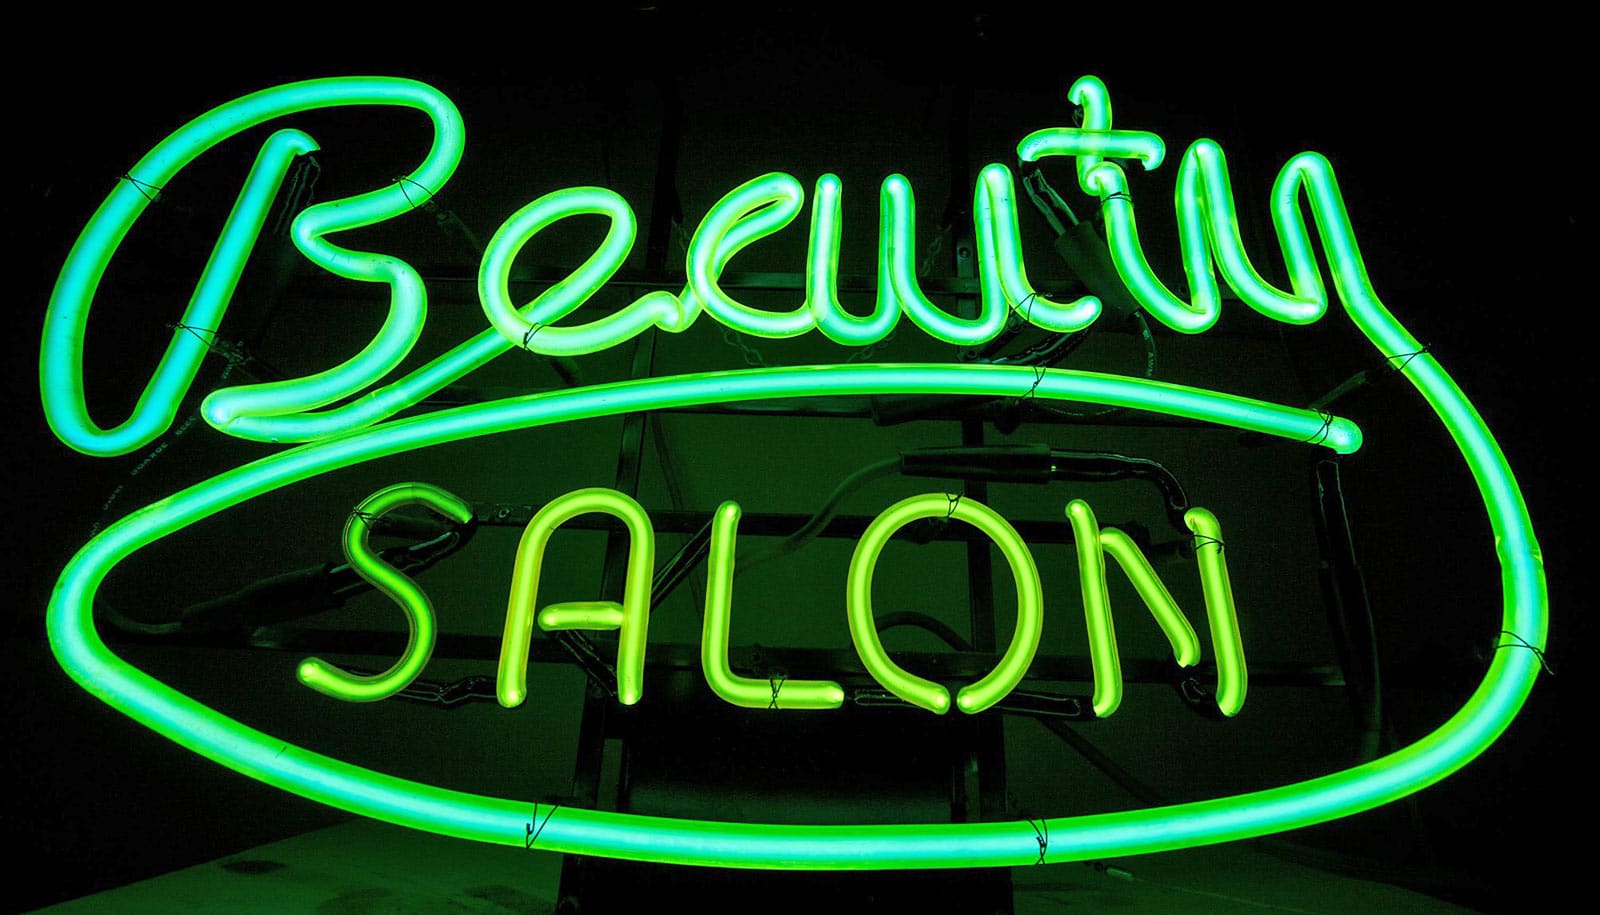 På et grønt neonskilt står "Skønhedssalon".